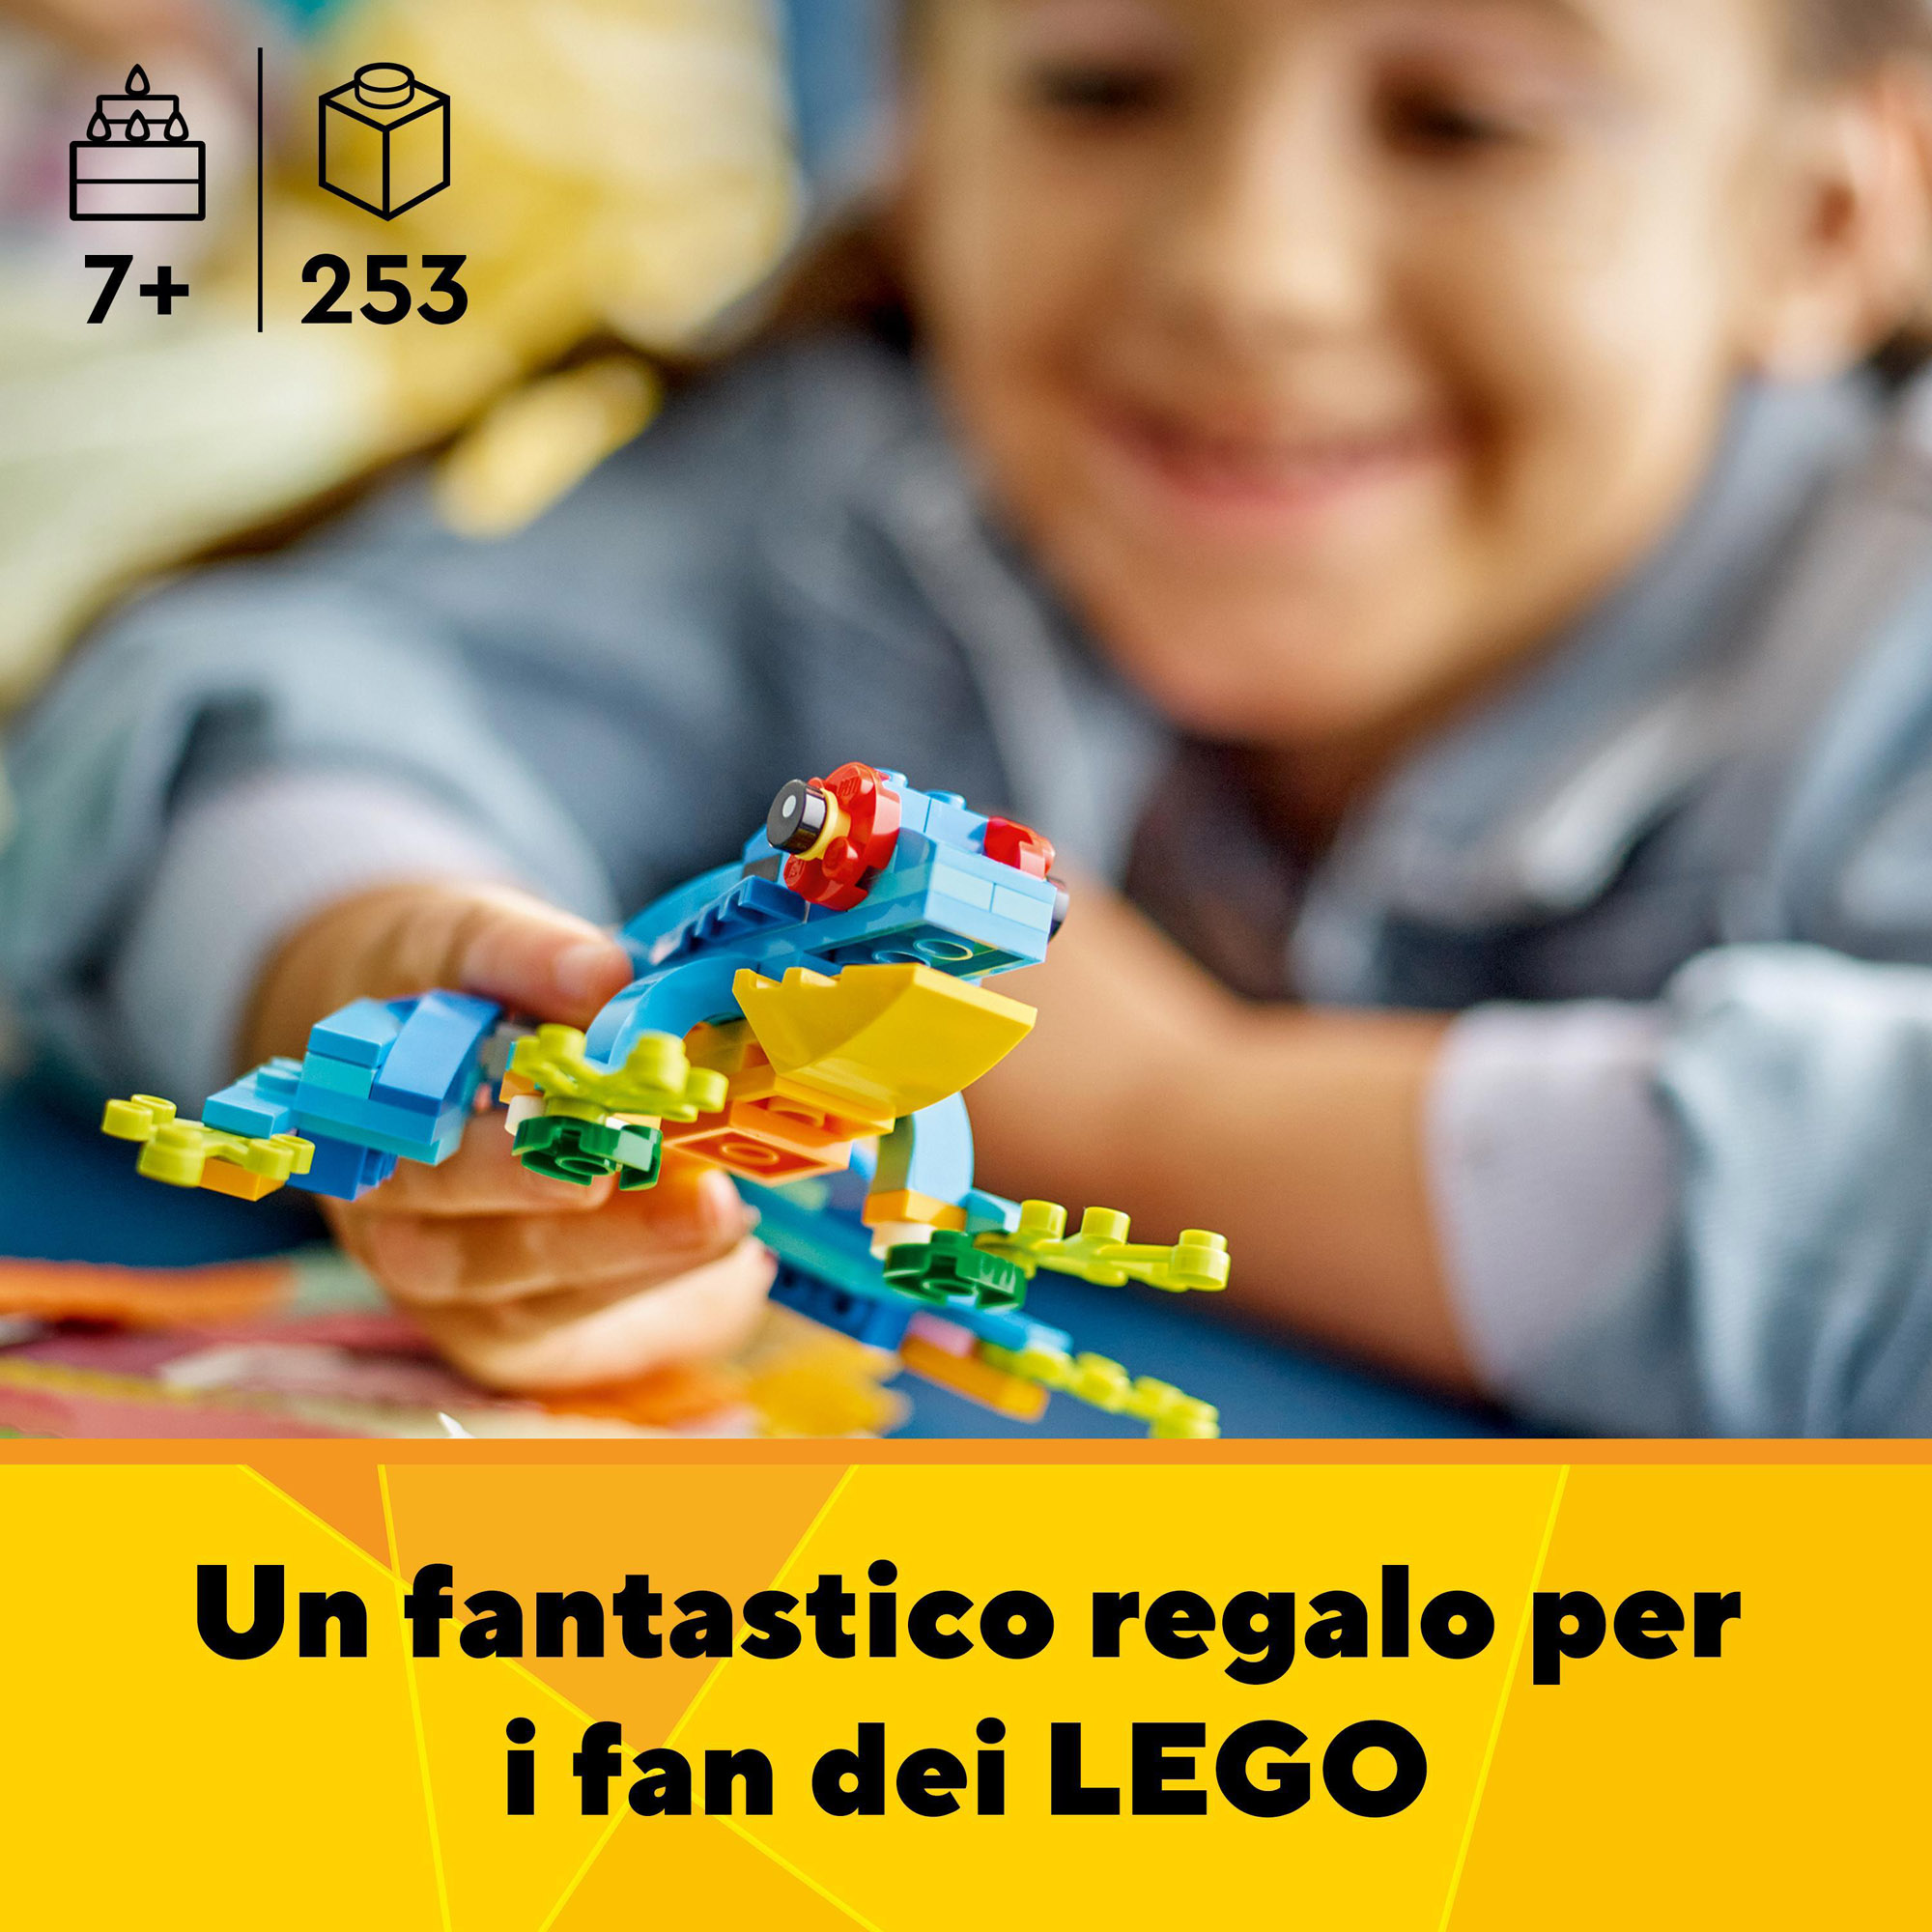 LEGO Creator 31136 Pappagallo Esotico, Set 3 in 1 con Pesce e Rana, da collezione - LEGO